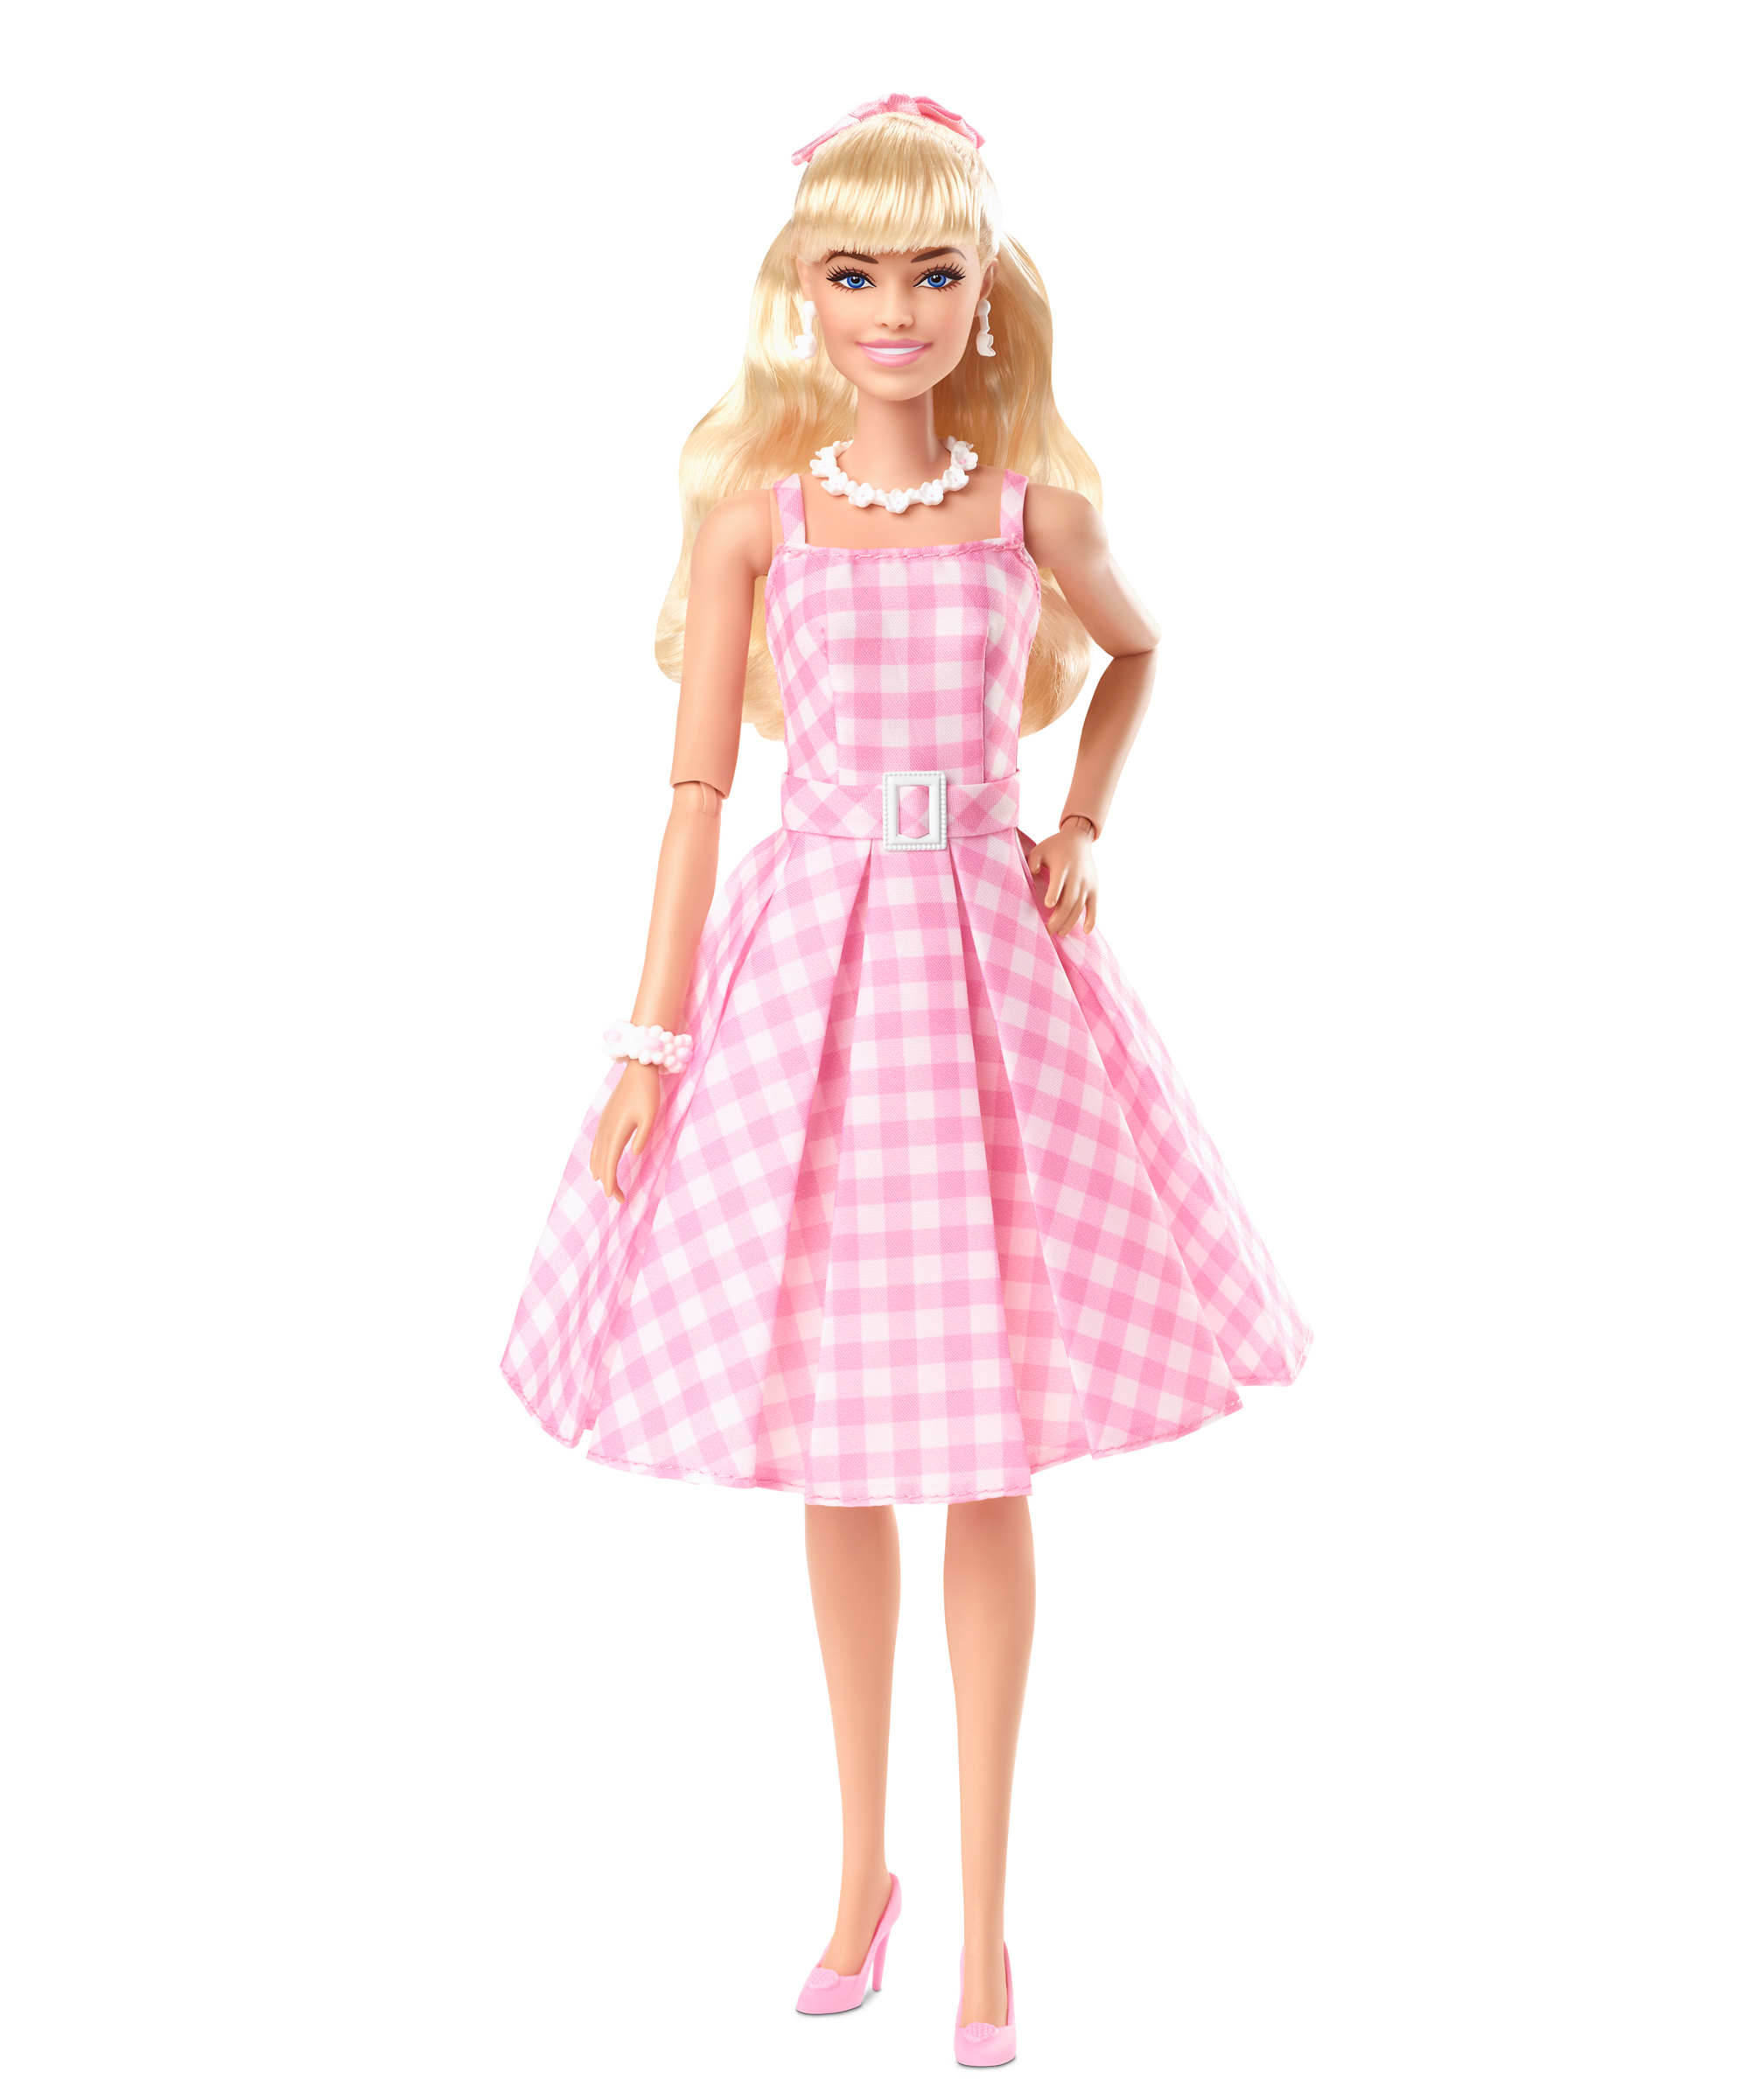 実写版「バービー」のキャラクターが人形に、ピンクのギンガムチェック